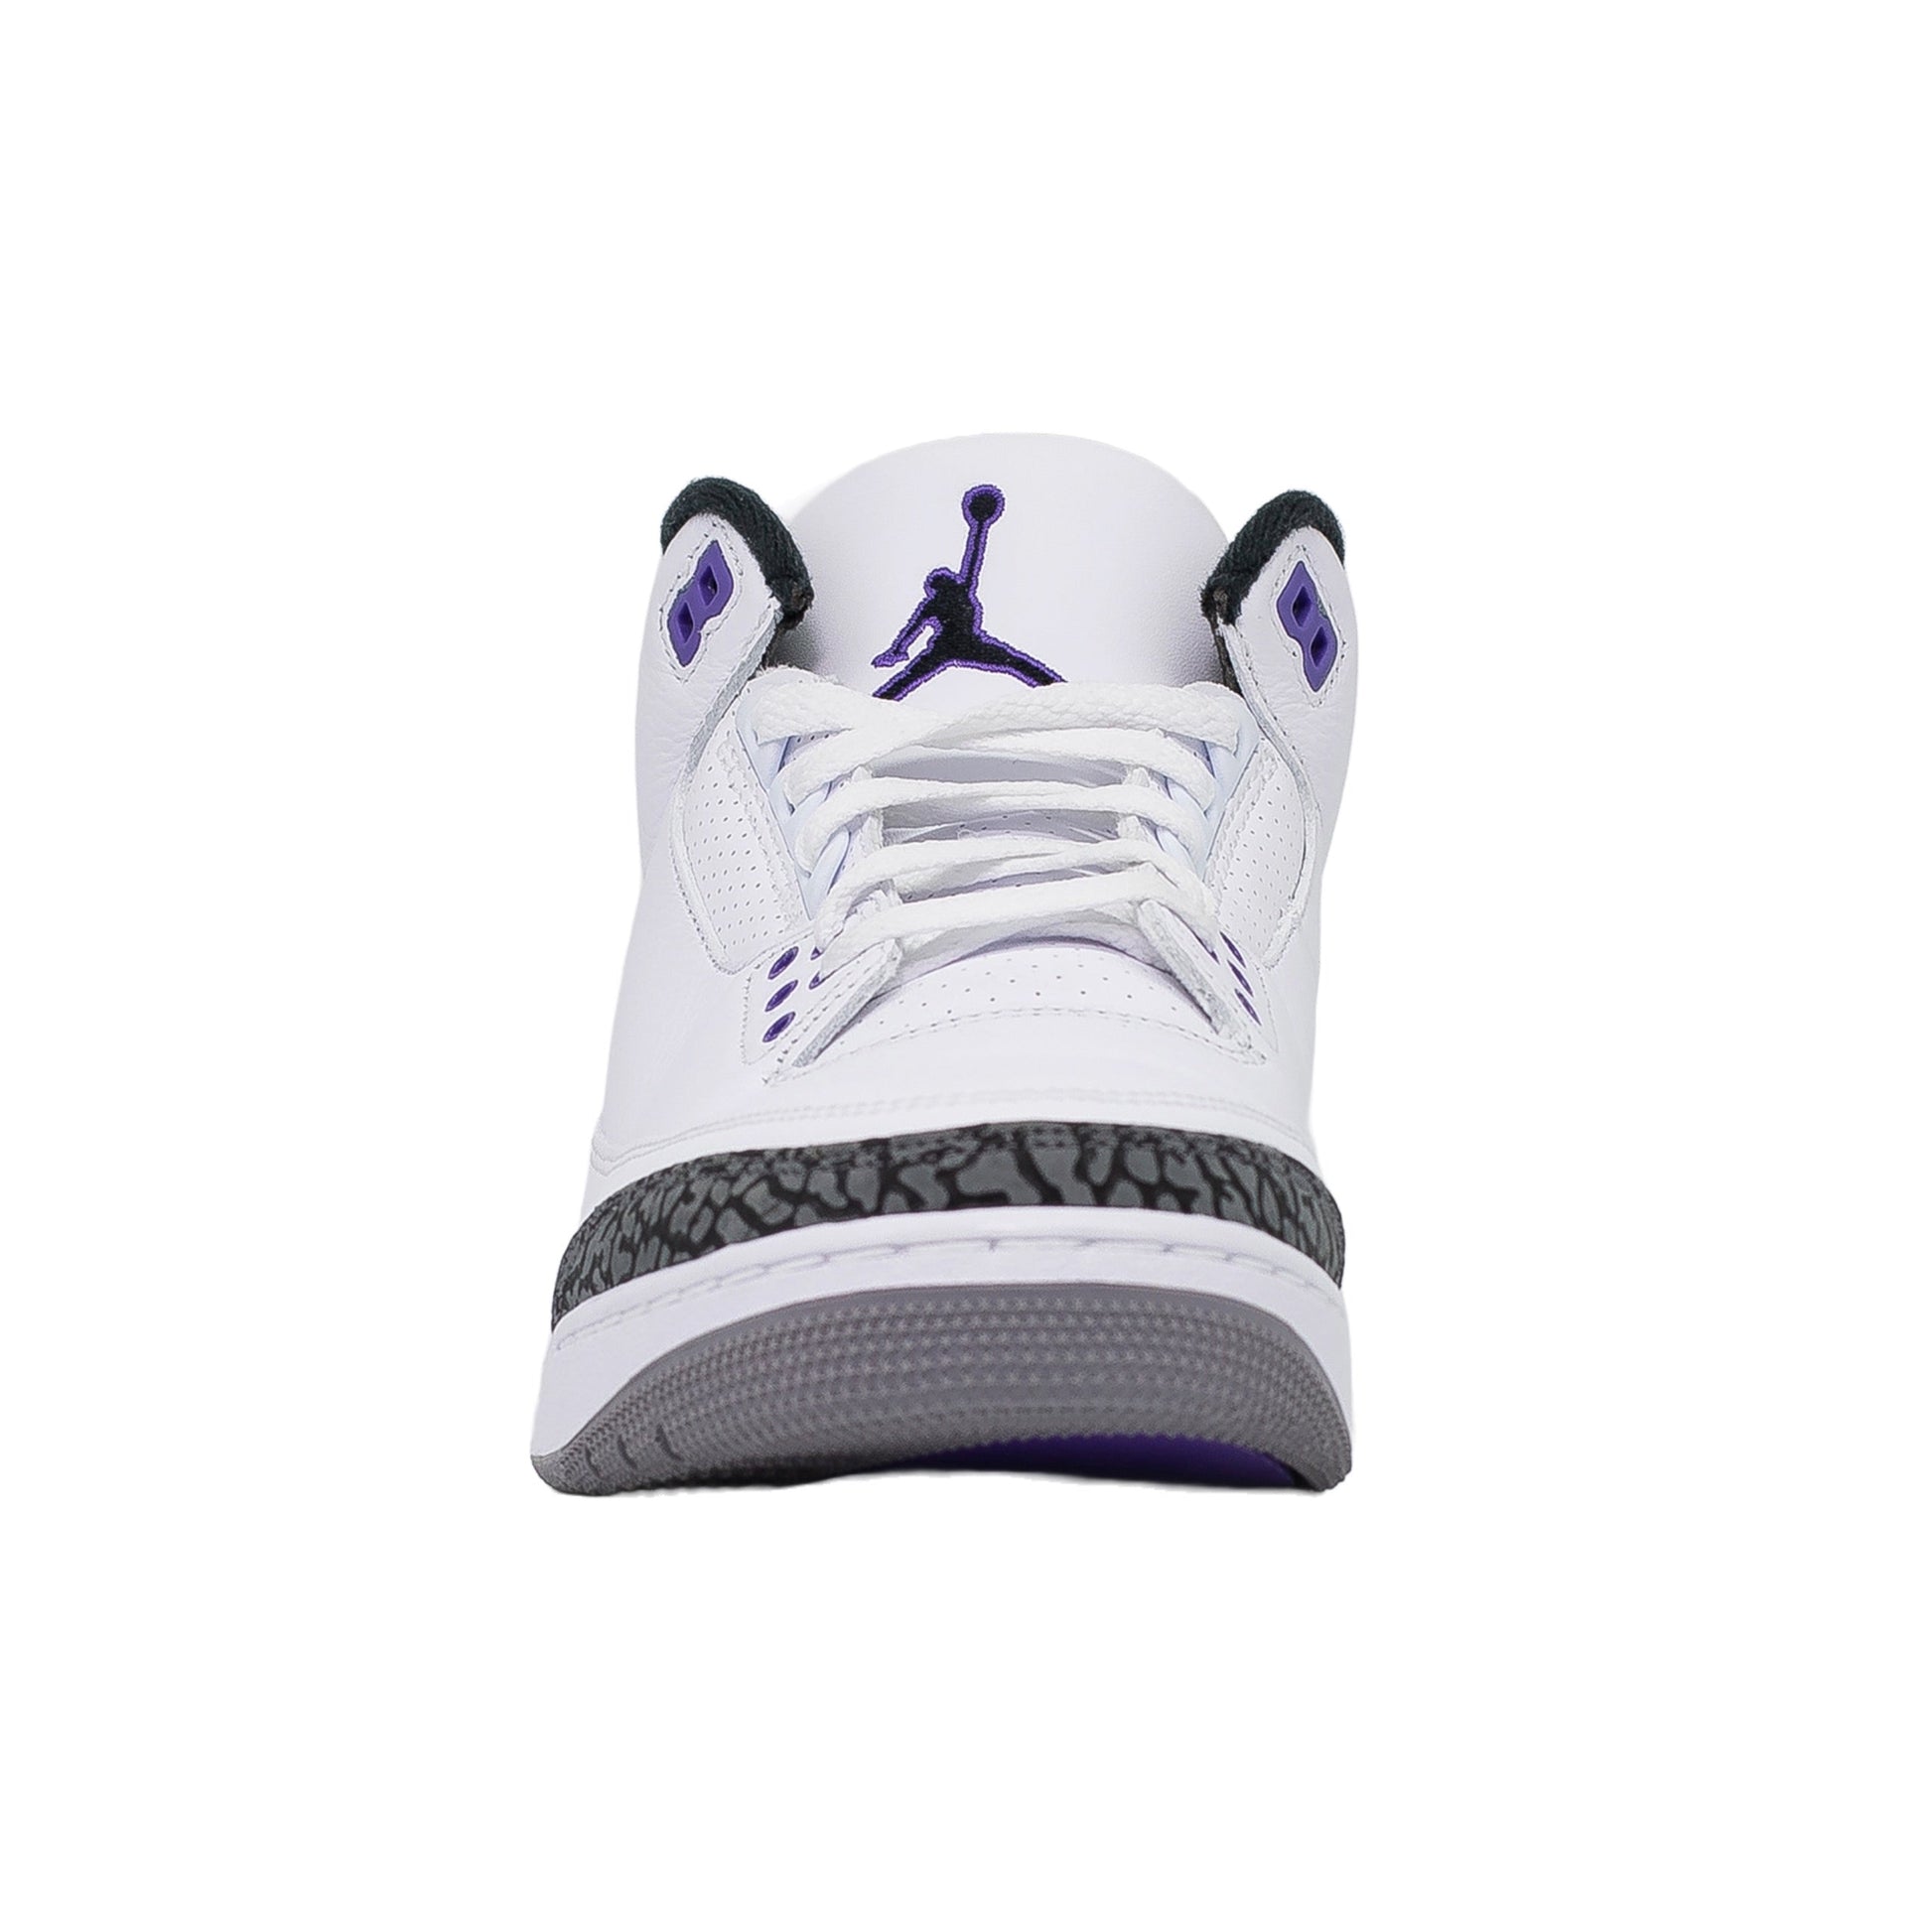 Air Jordan 3, Dark Iris